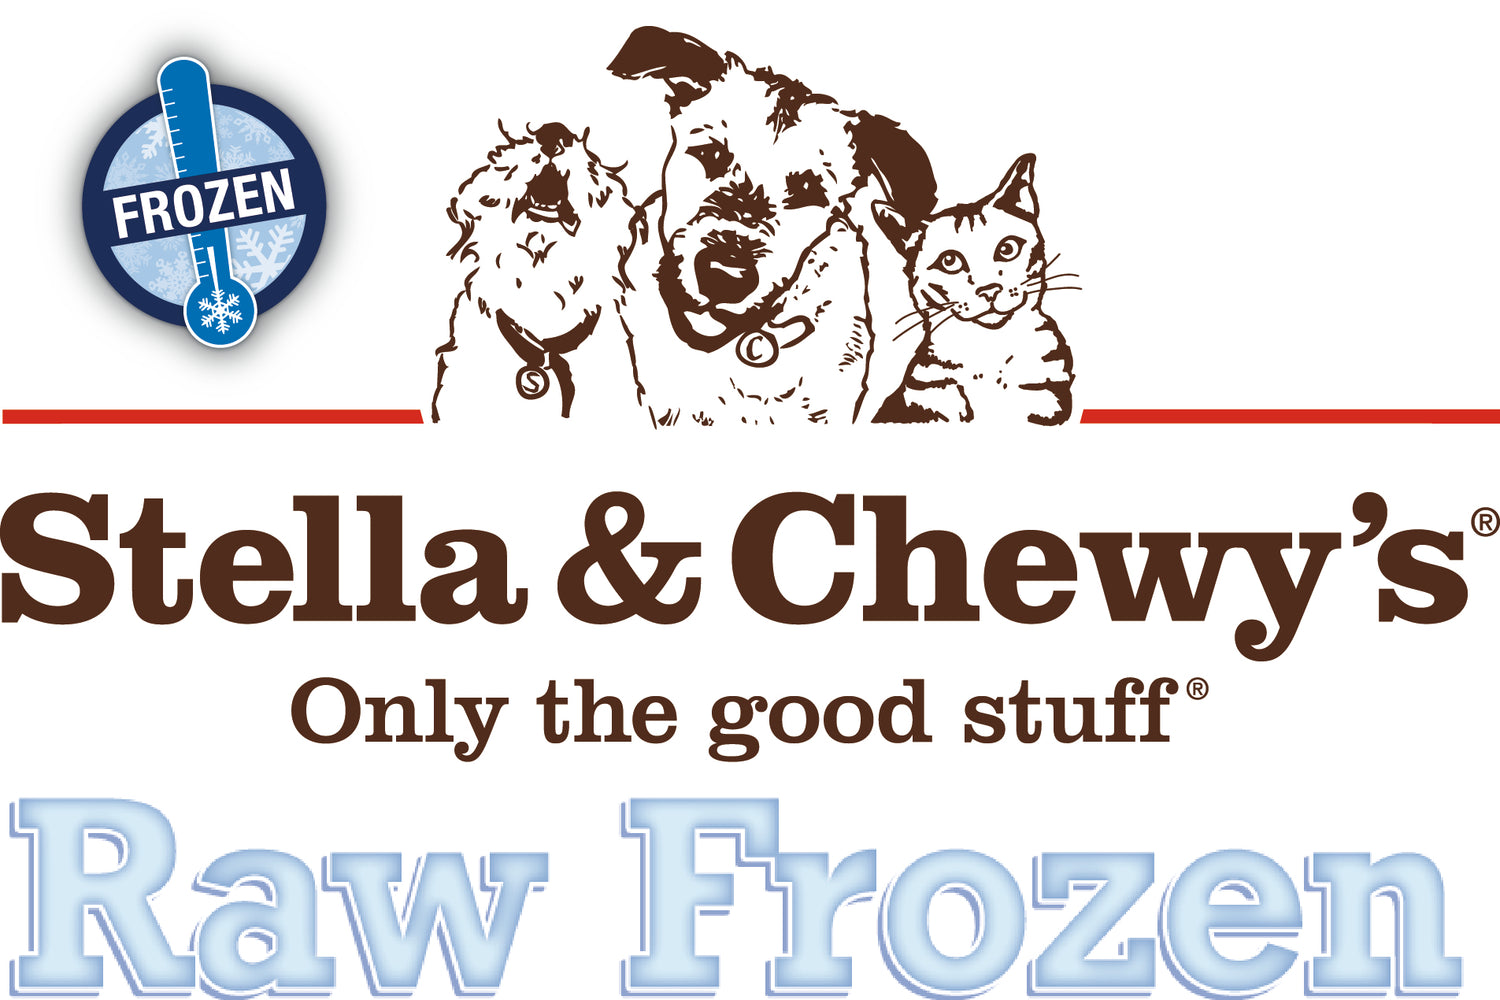 Stella & Chewy's Raw Frozen